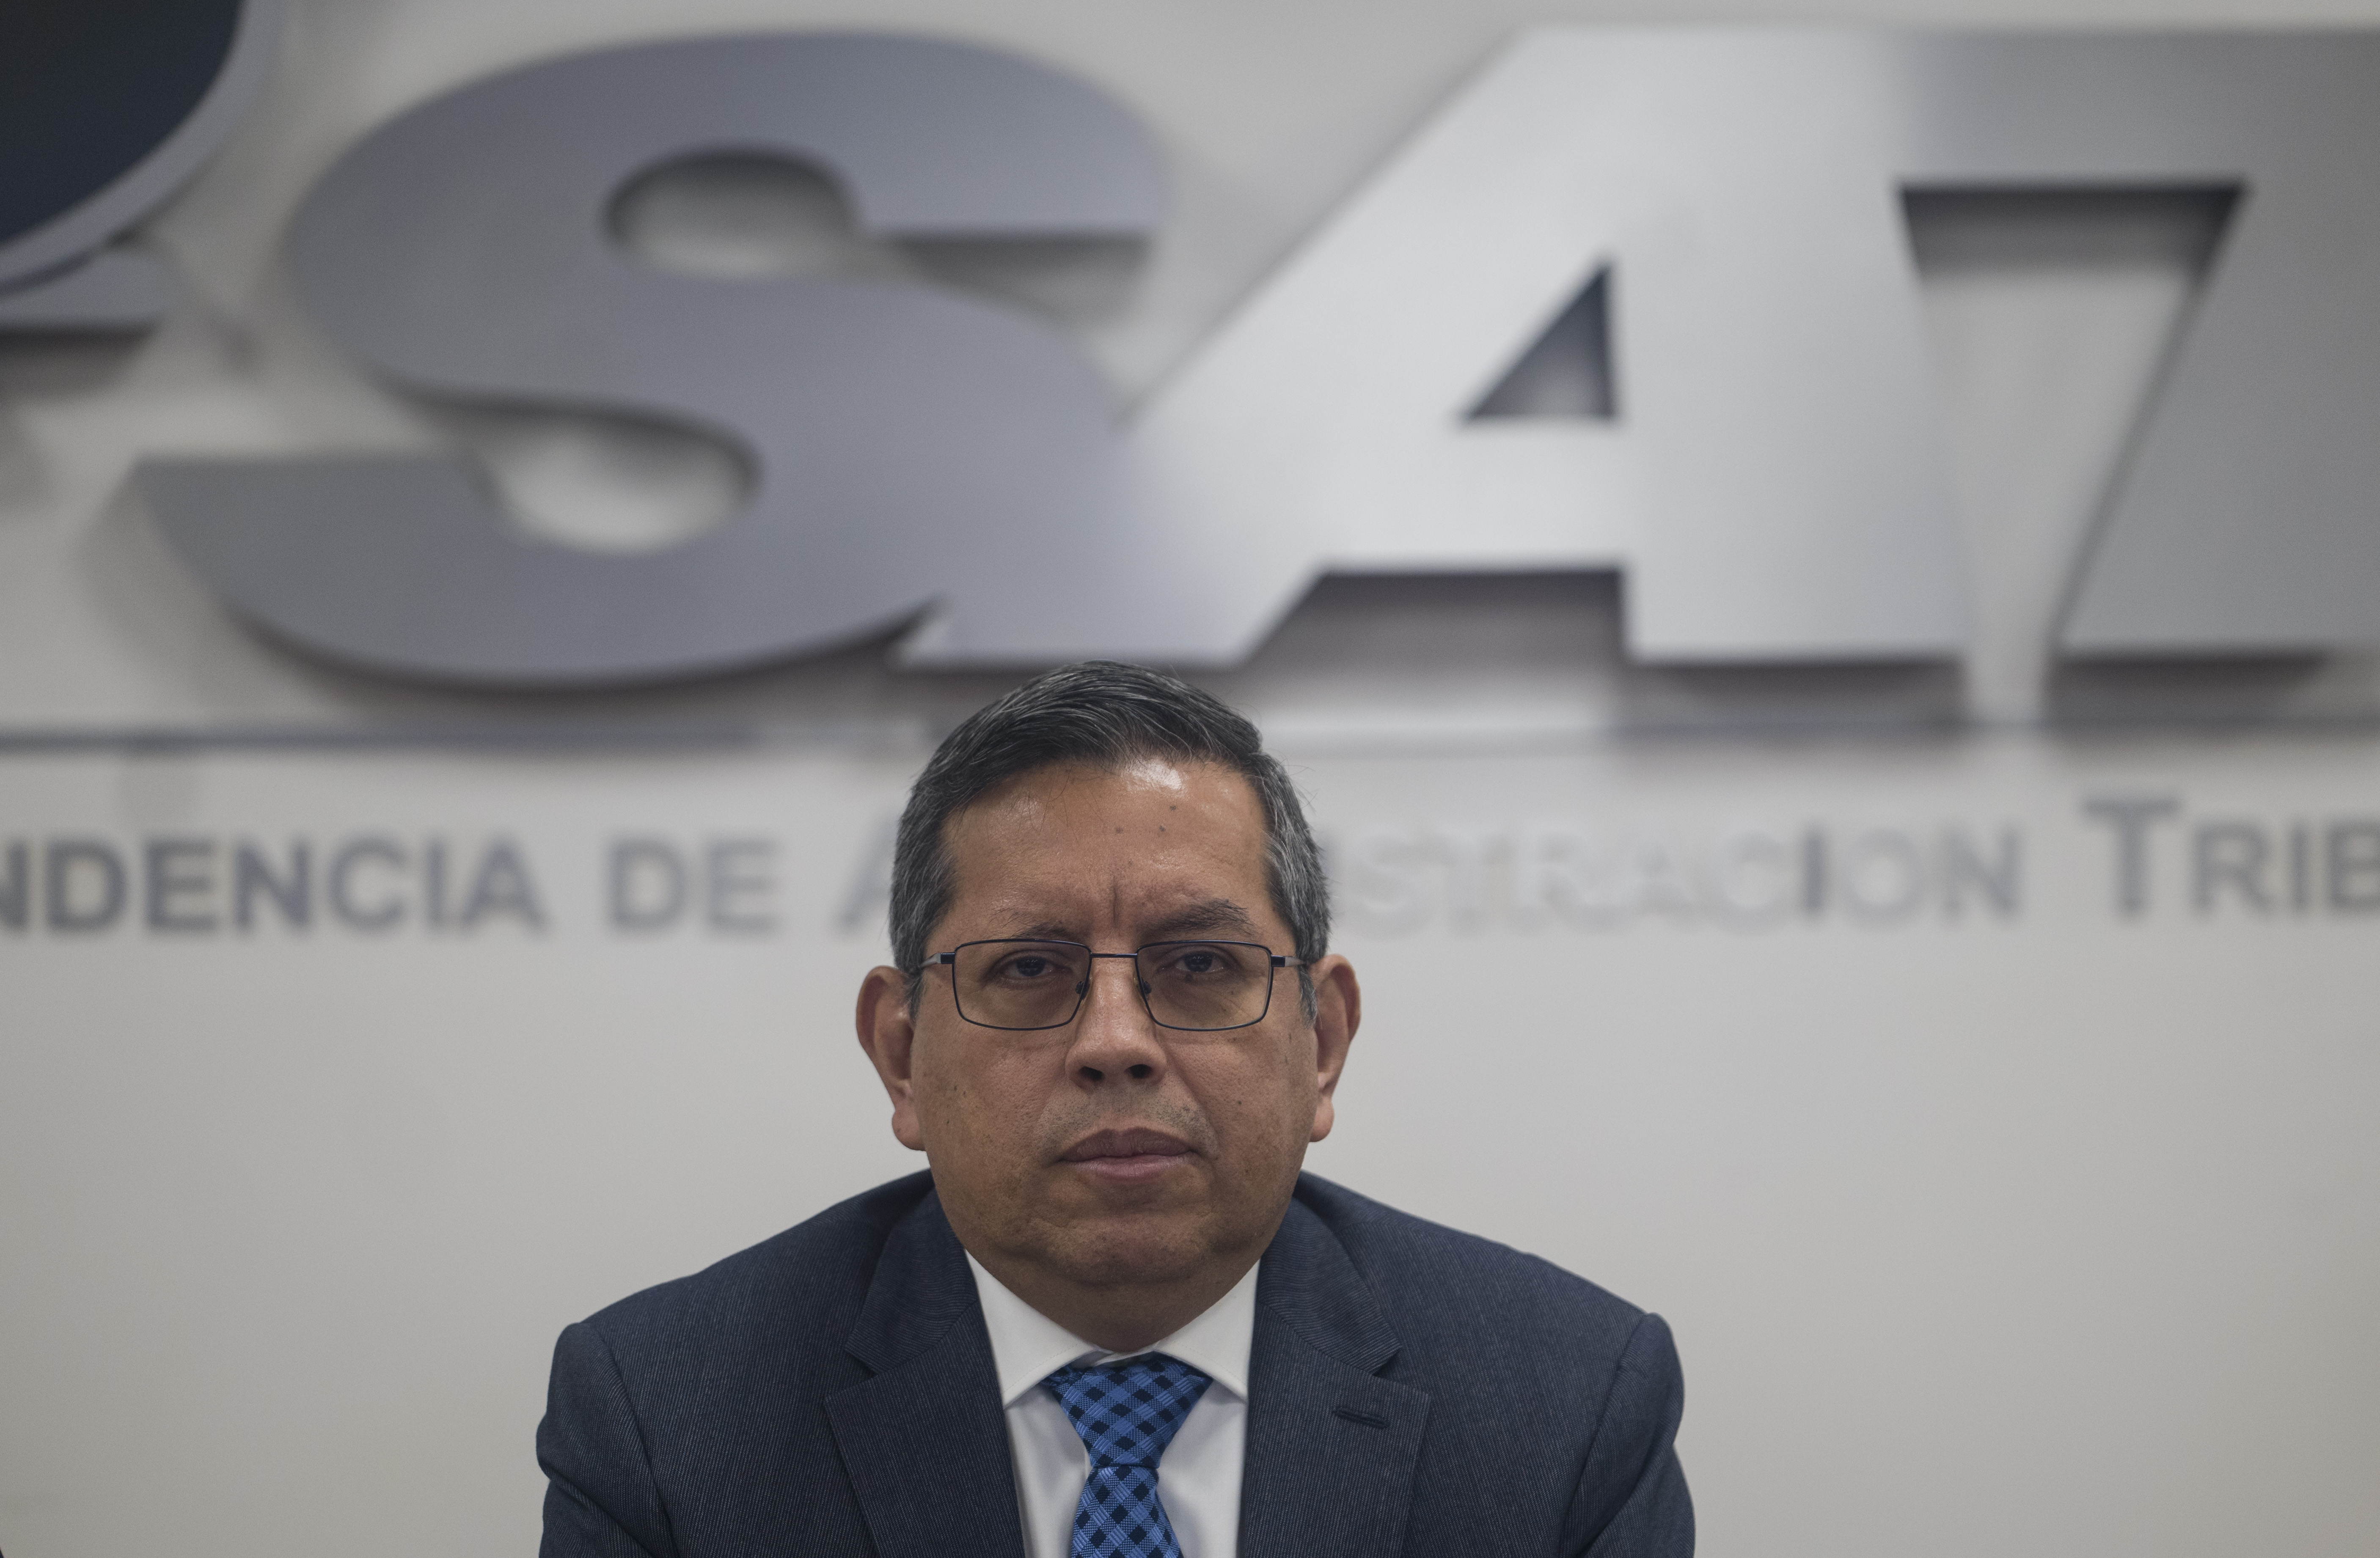 Marco Livio Díaz, Superintendente de Administración Tributaria (Sat) durante una reunión en dicha institución. Foto